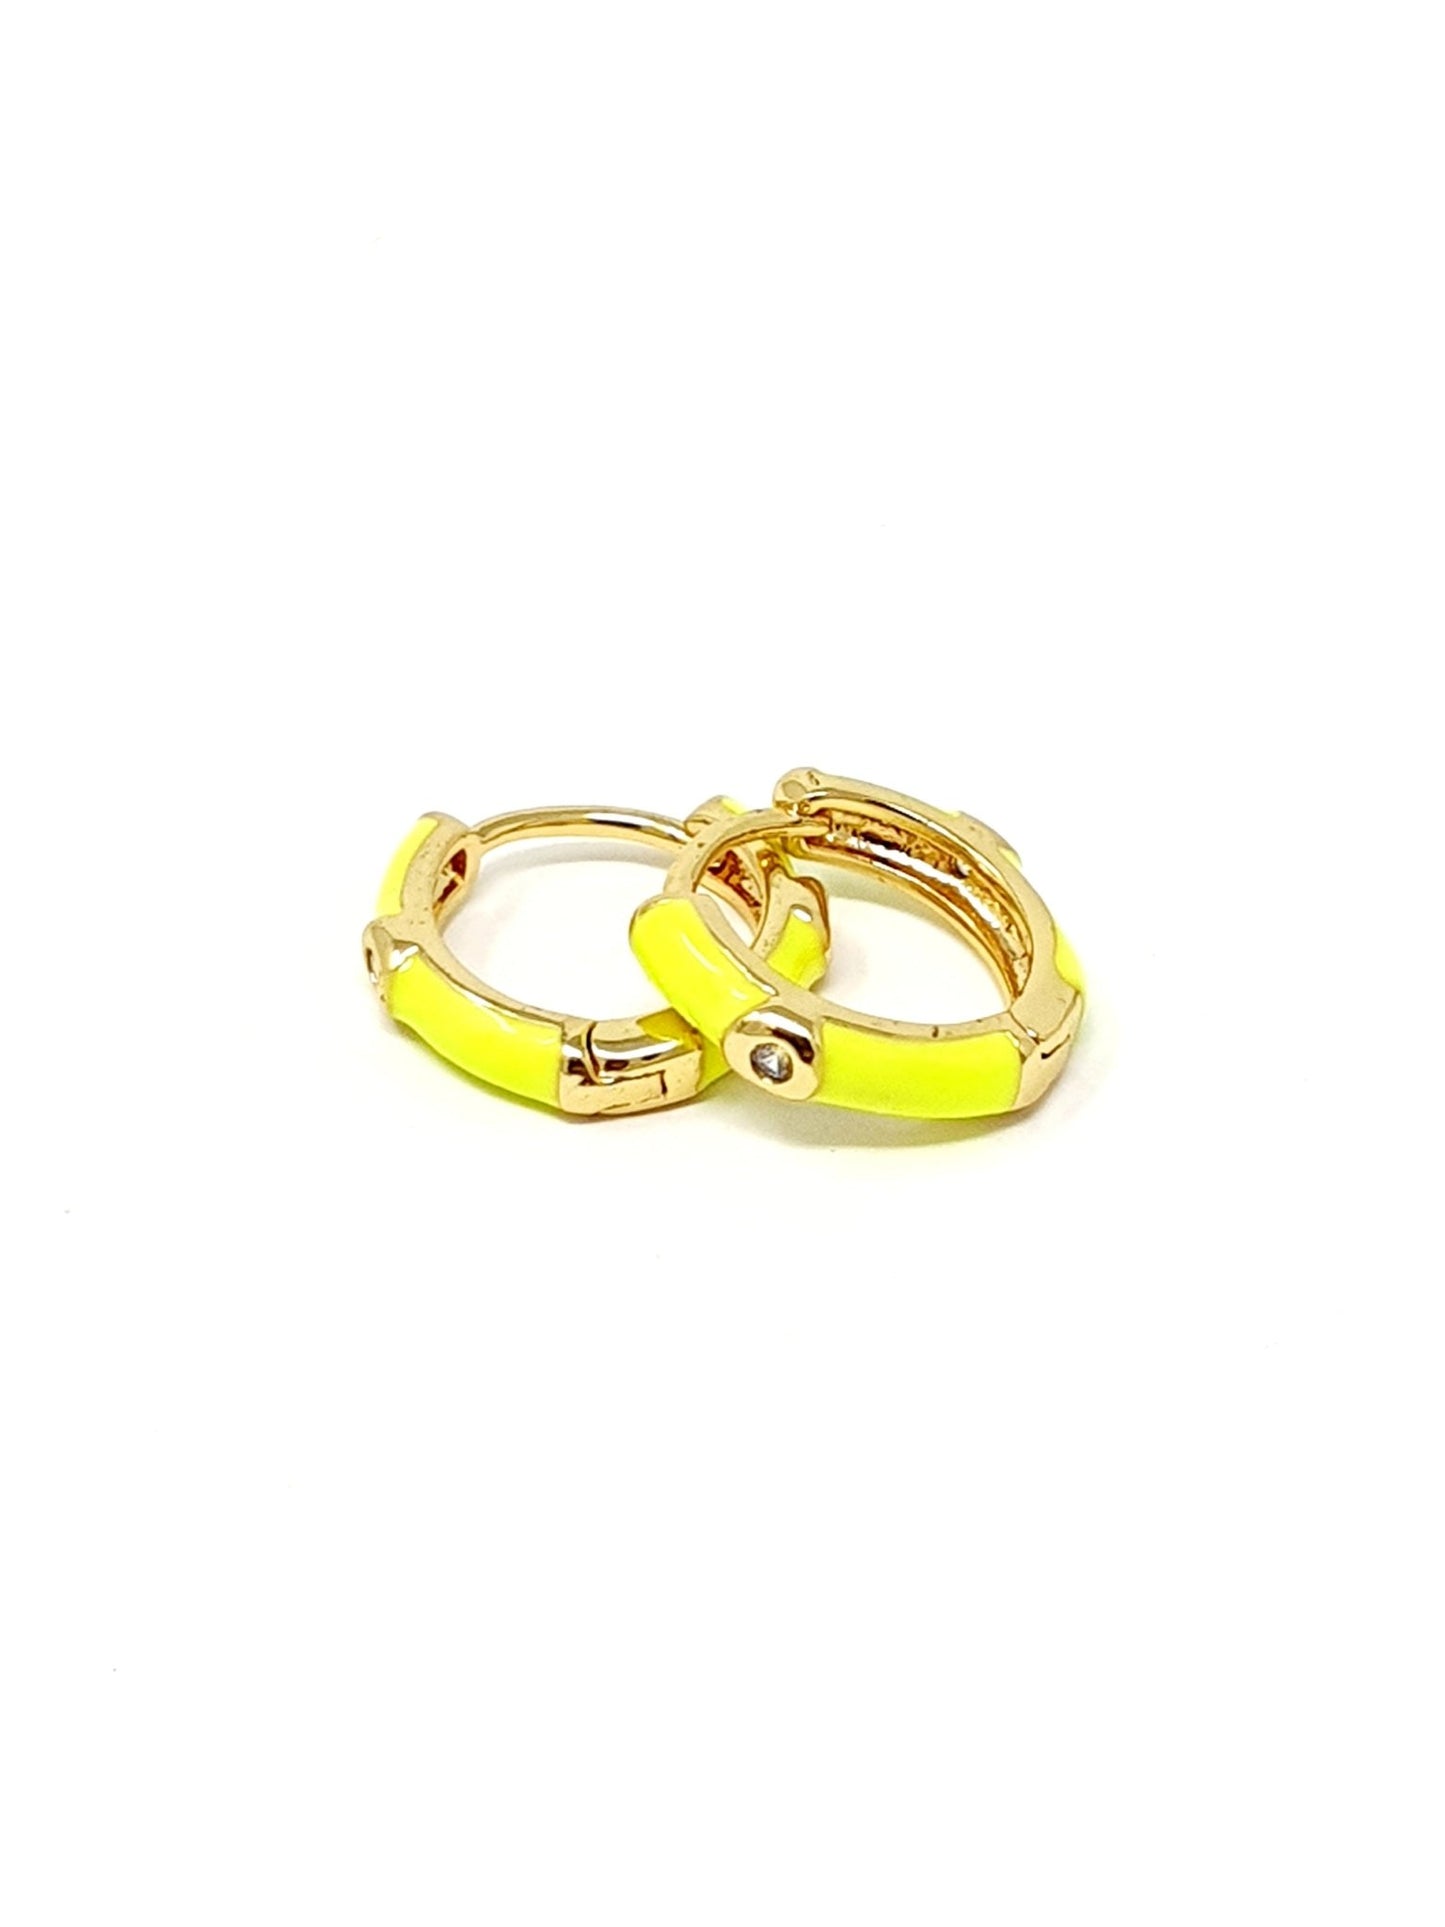 Coppia di mini hoops "Positano” gold smaltati giallo fluo - 333HOPE333